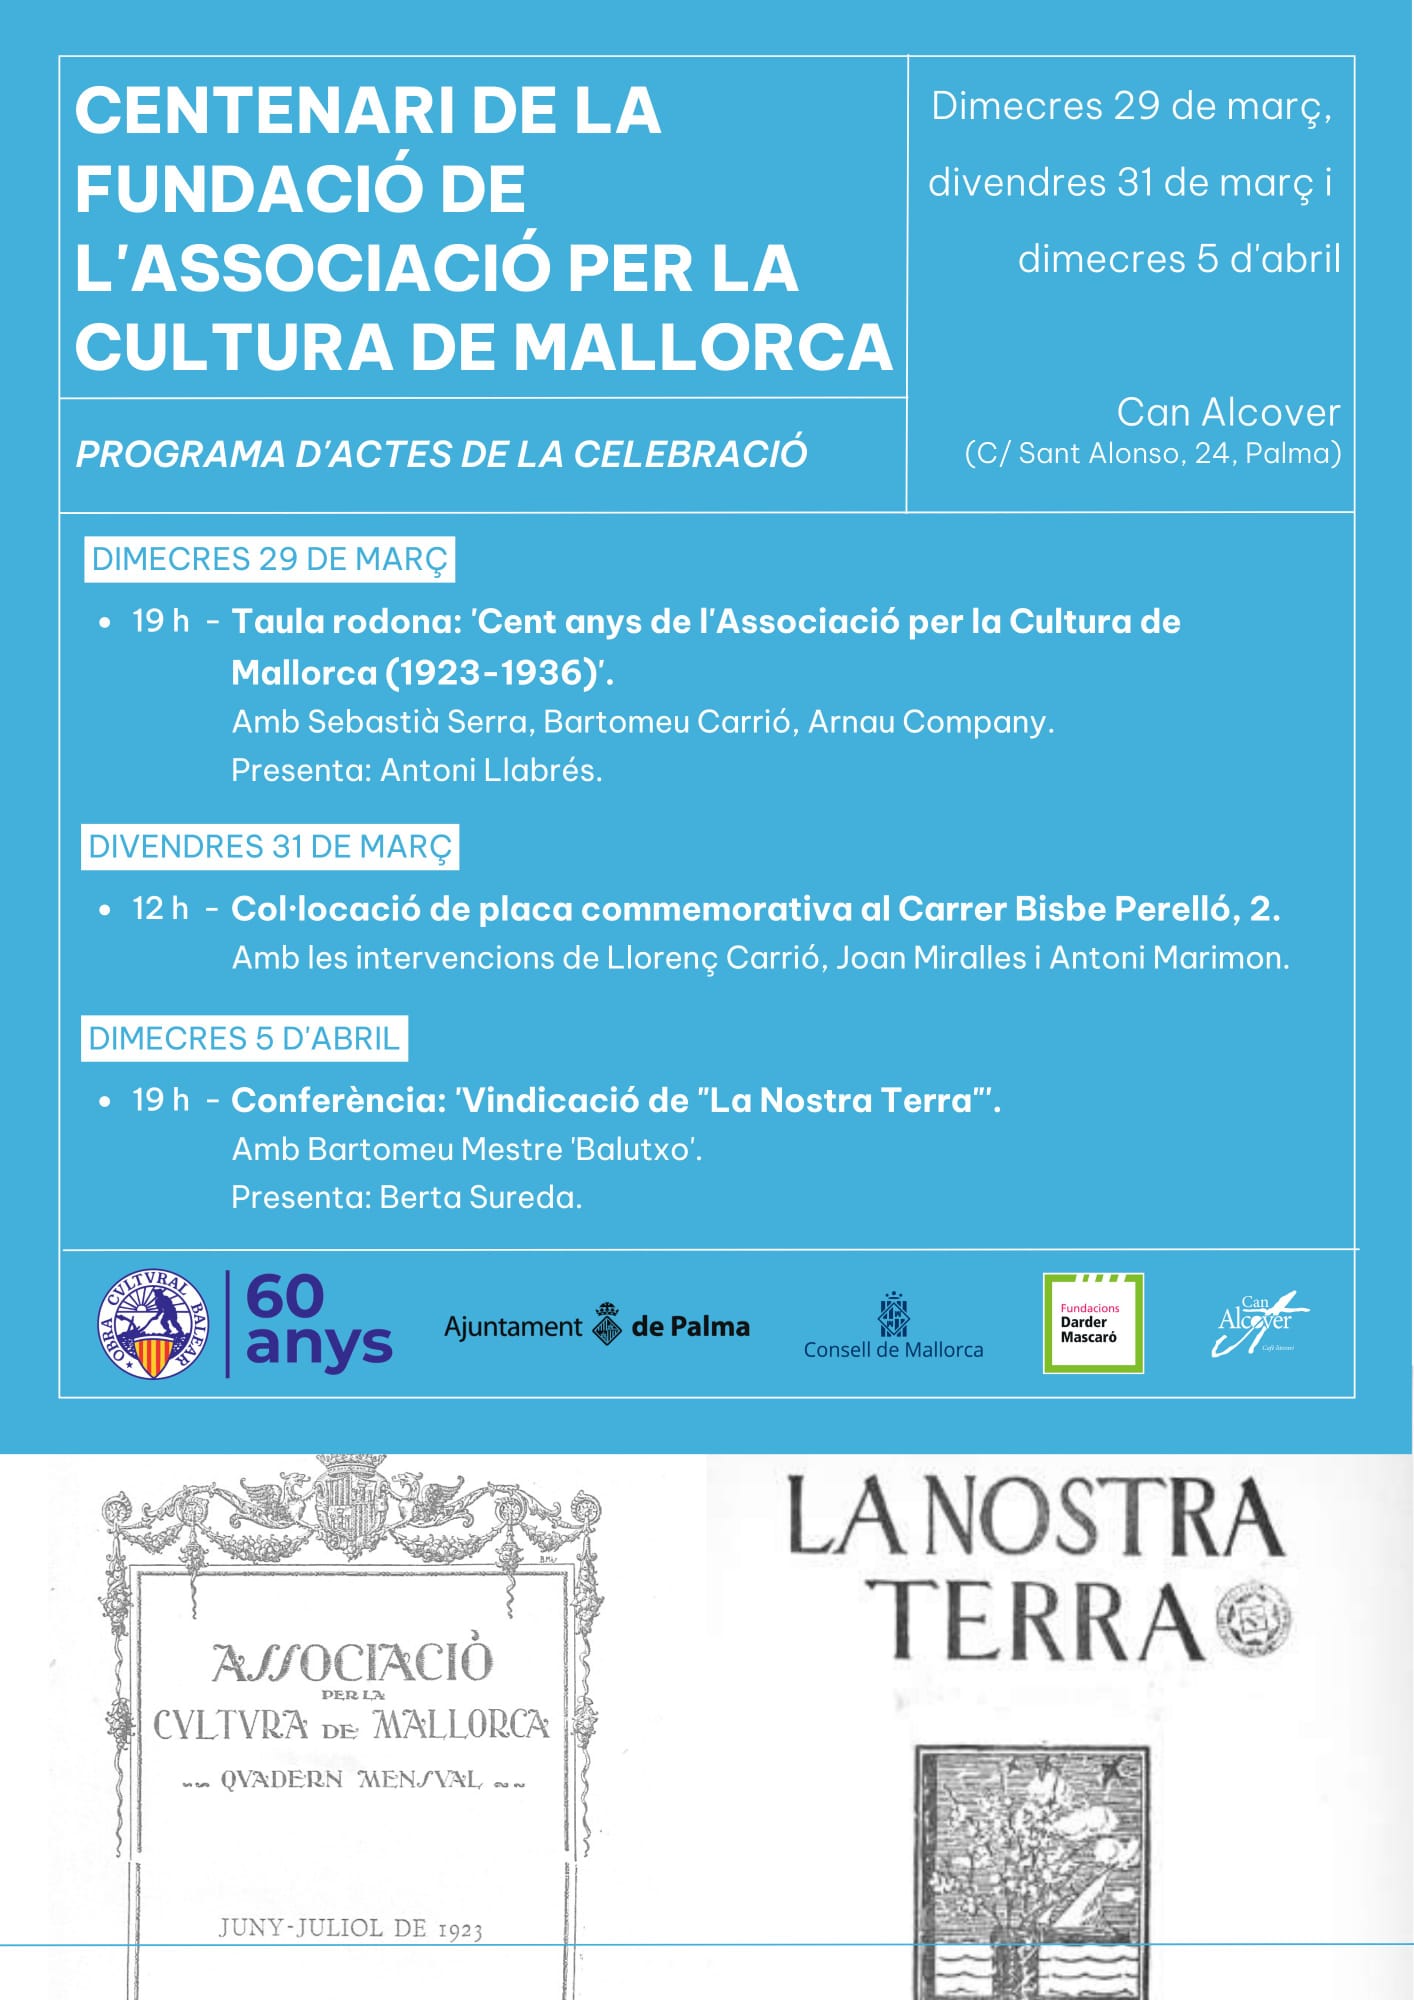 Centenari Associació per la Cultura de Mallorca